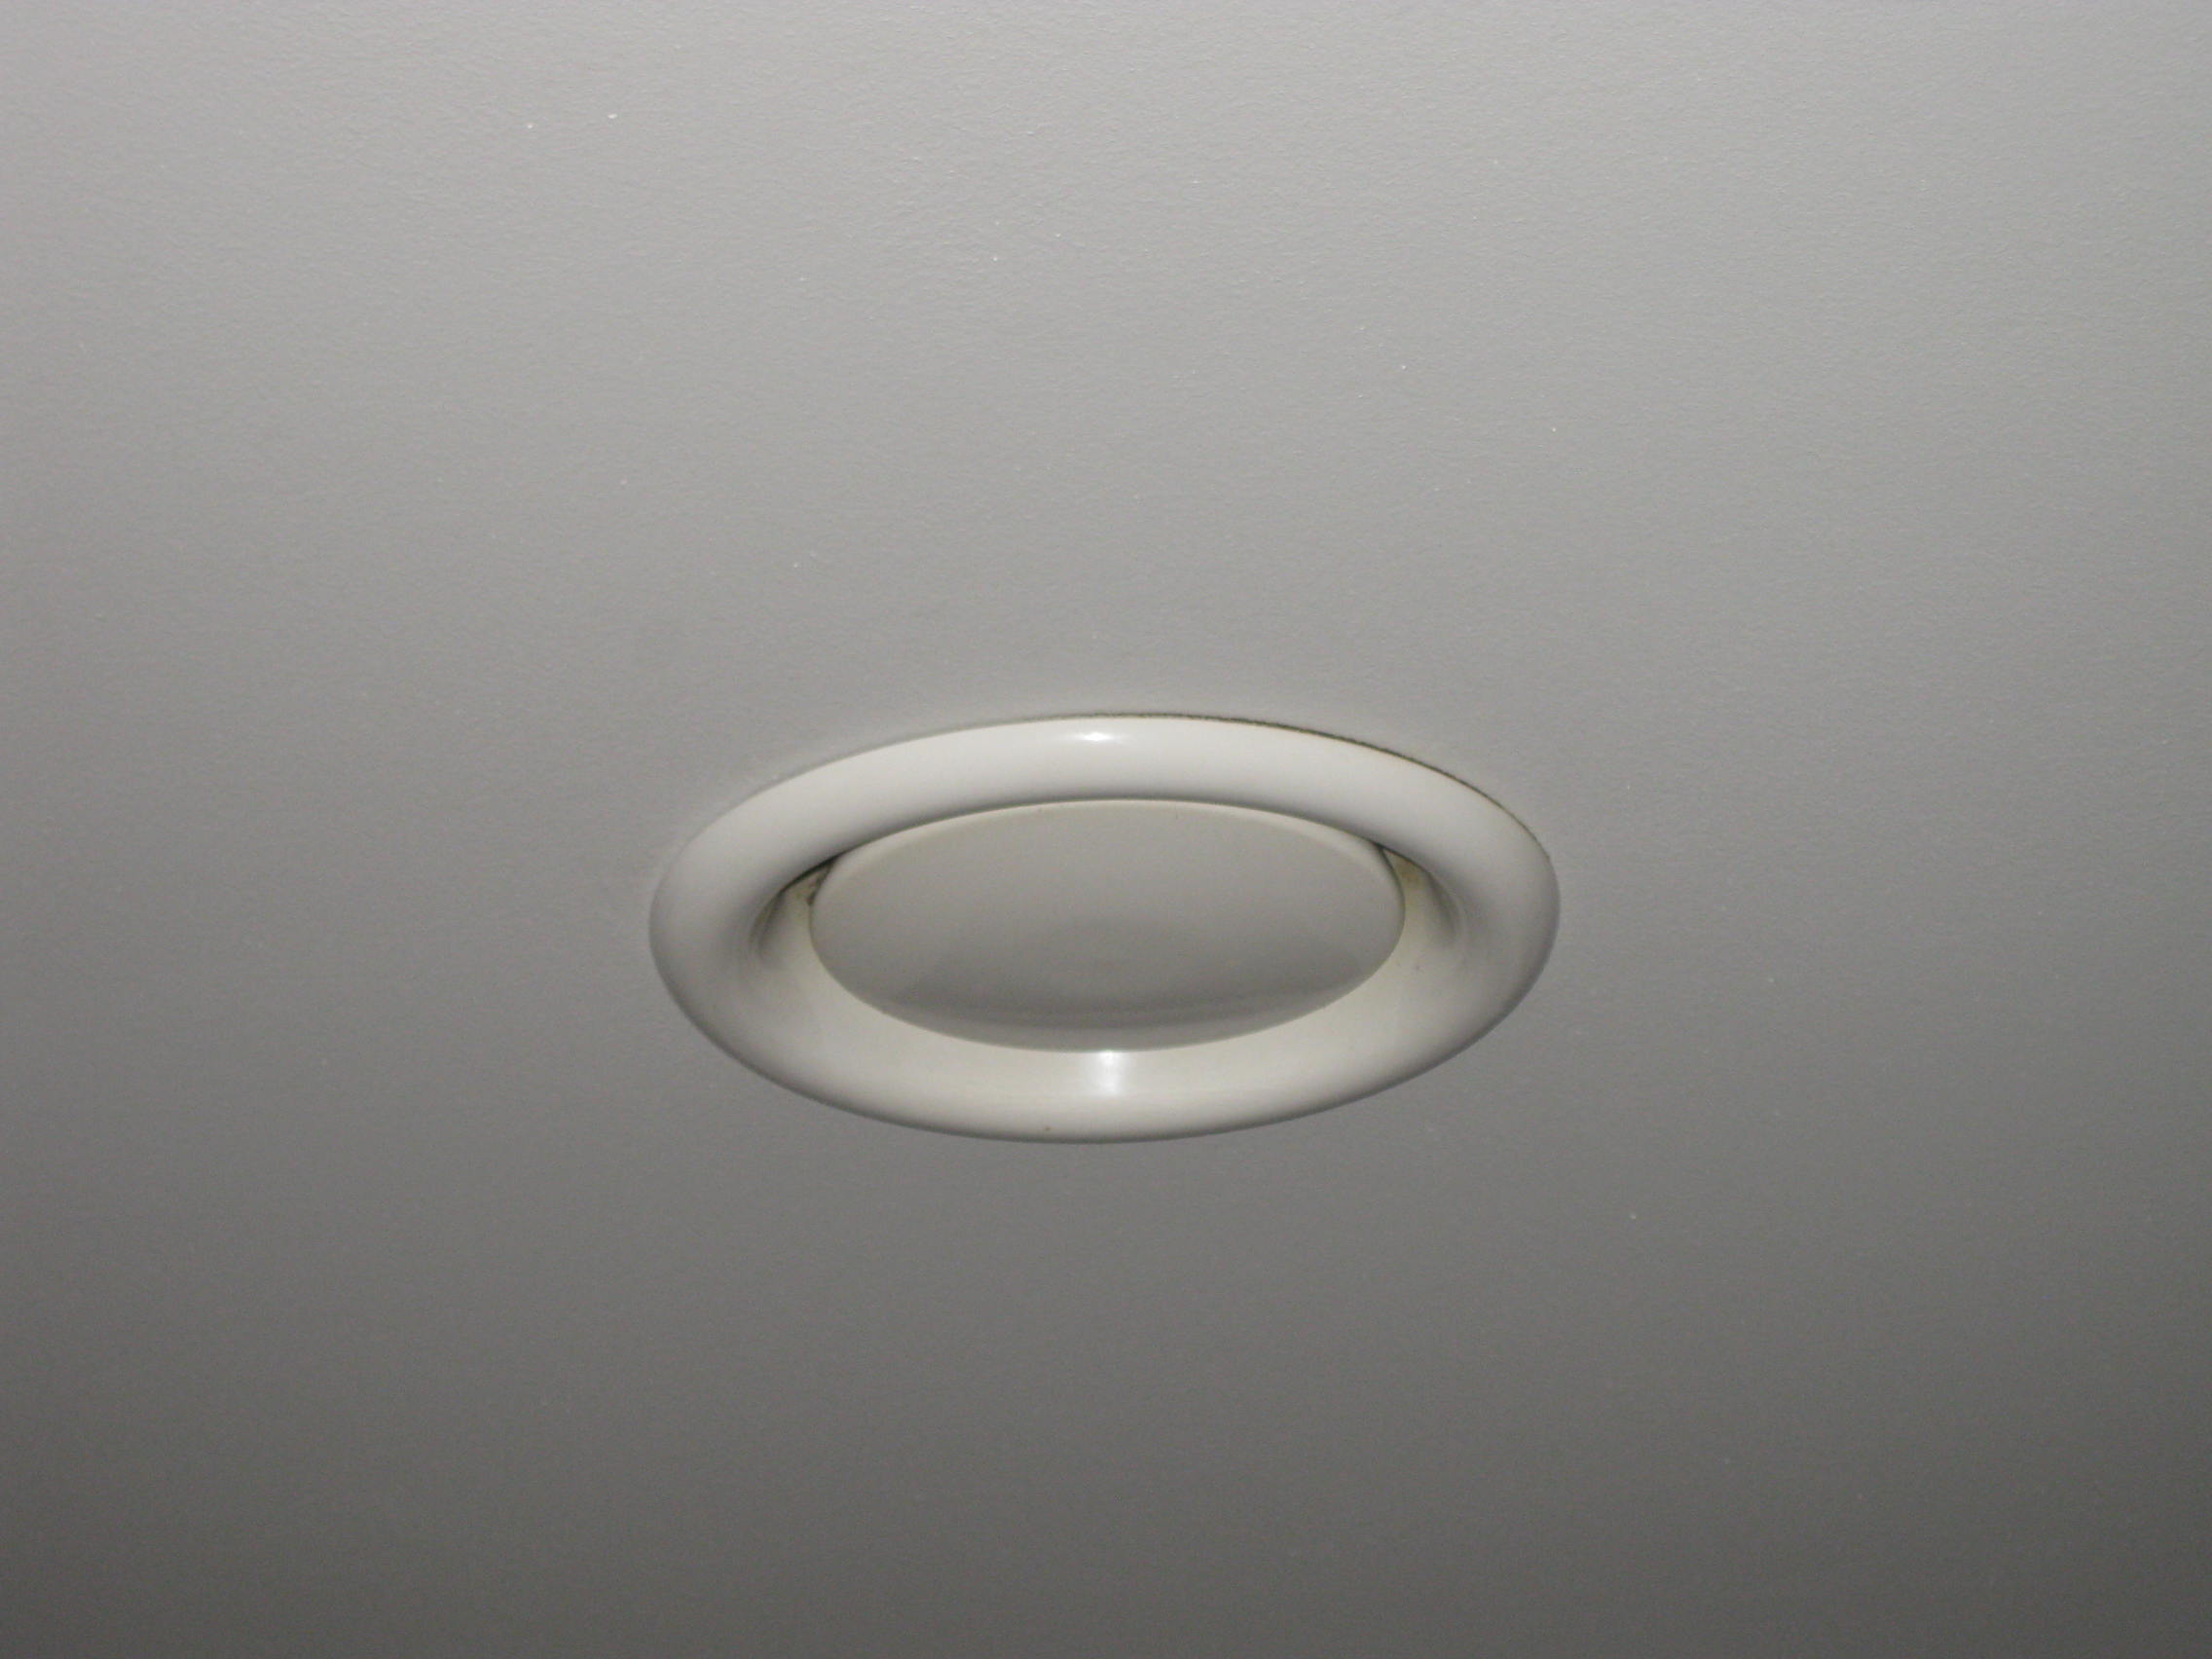 Диффузор ДПУ-125М Арктос пластиковый в потолке ванной комнаты. Фотография цифровая 2013 год